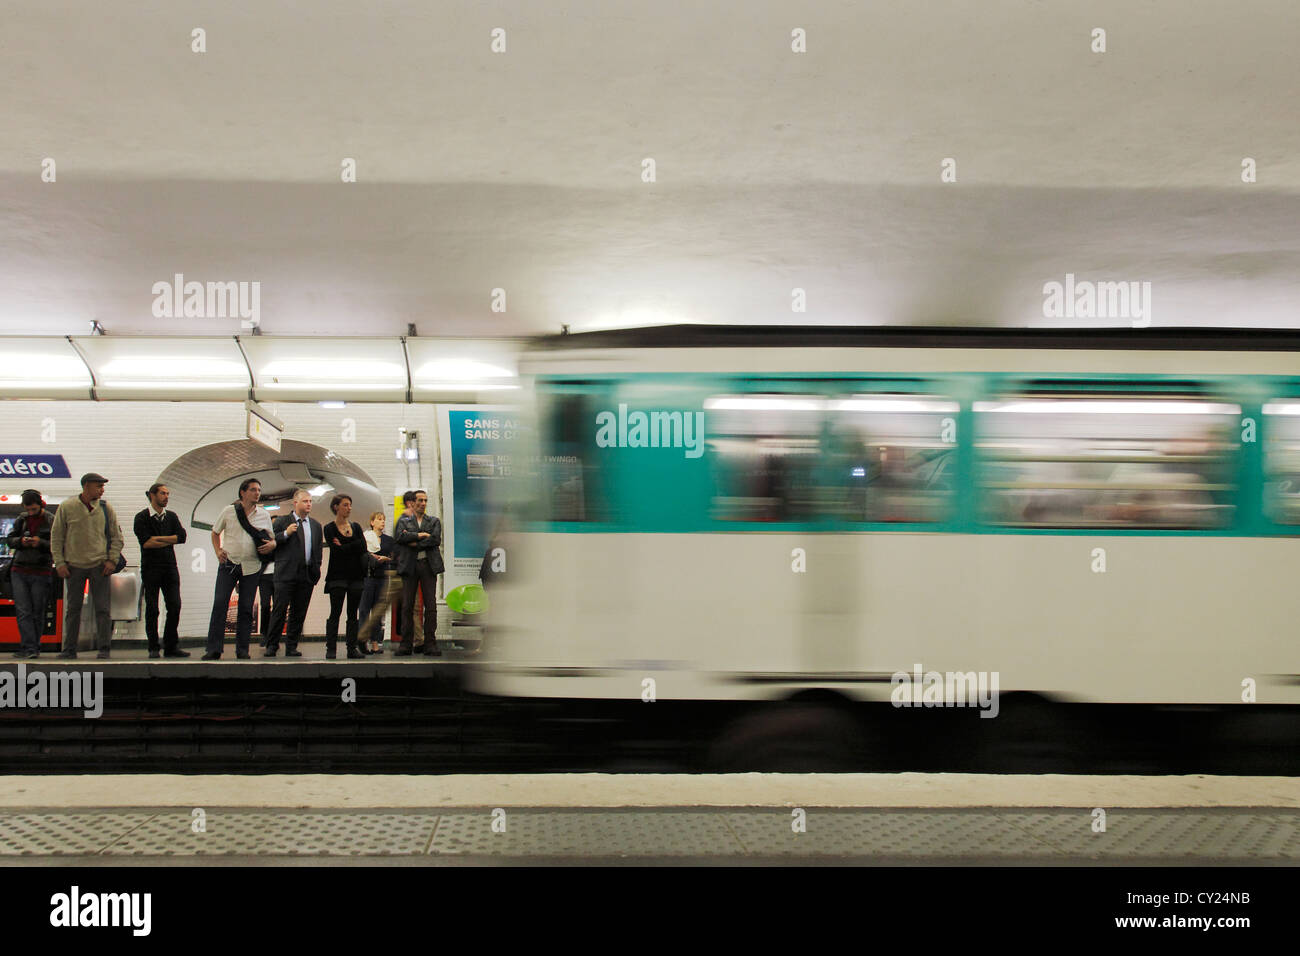 Le train arrivant à la station de métro Trocadéro à Paris Banque D'Images